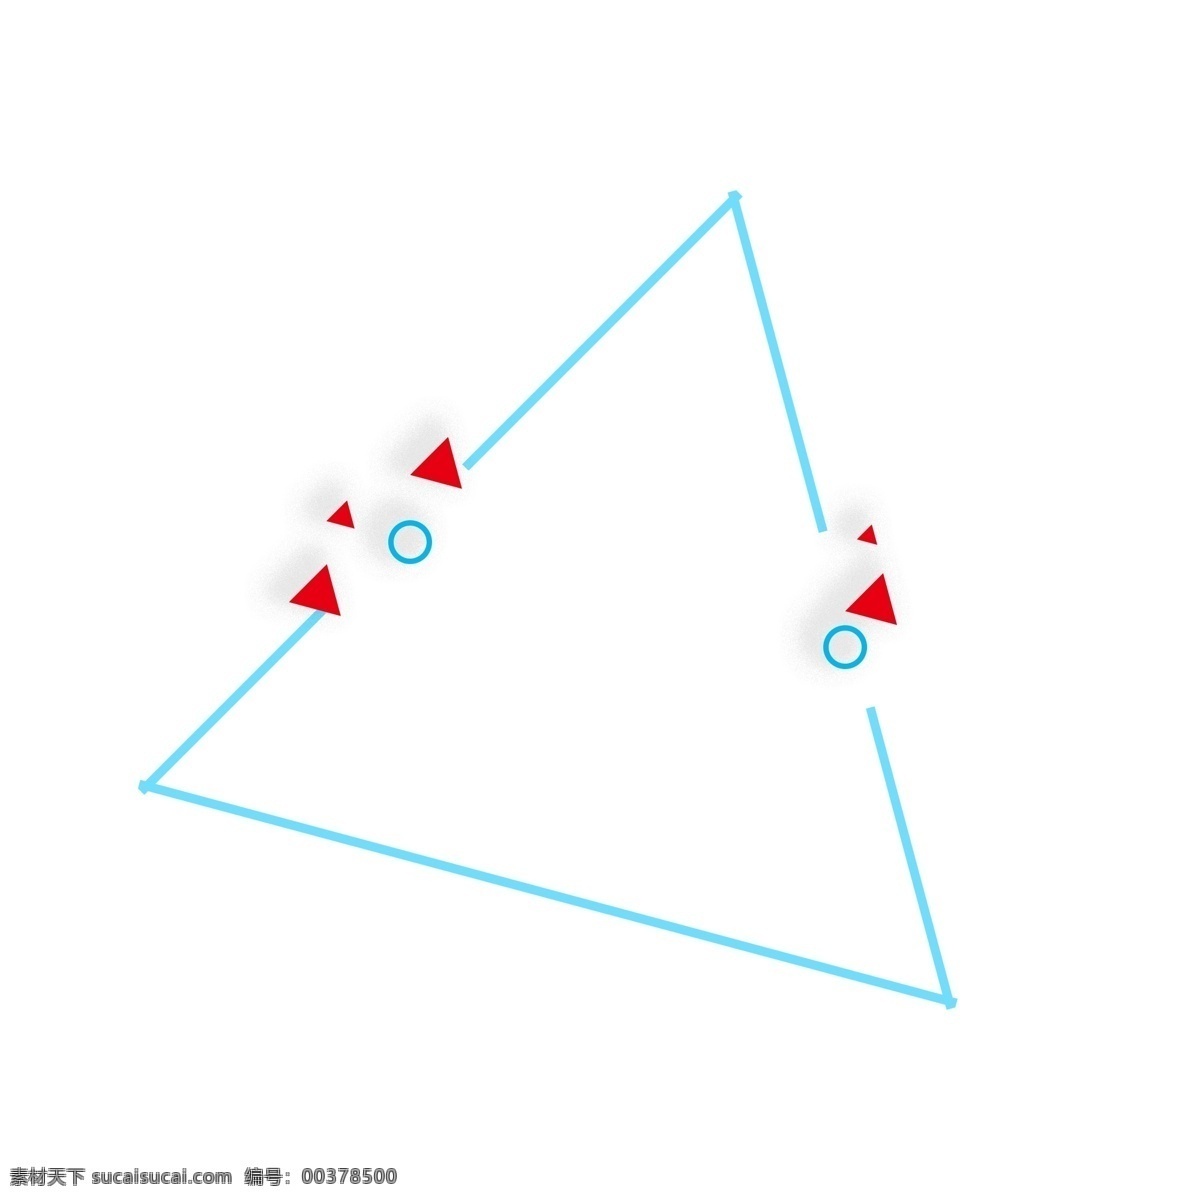 手绘 蓝色 三角形 边框 卡通手绘 水彩 几何图形 红色 圆圈 圆形 小清新 不规则图形 创意